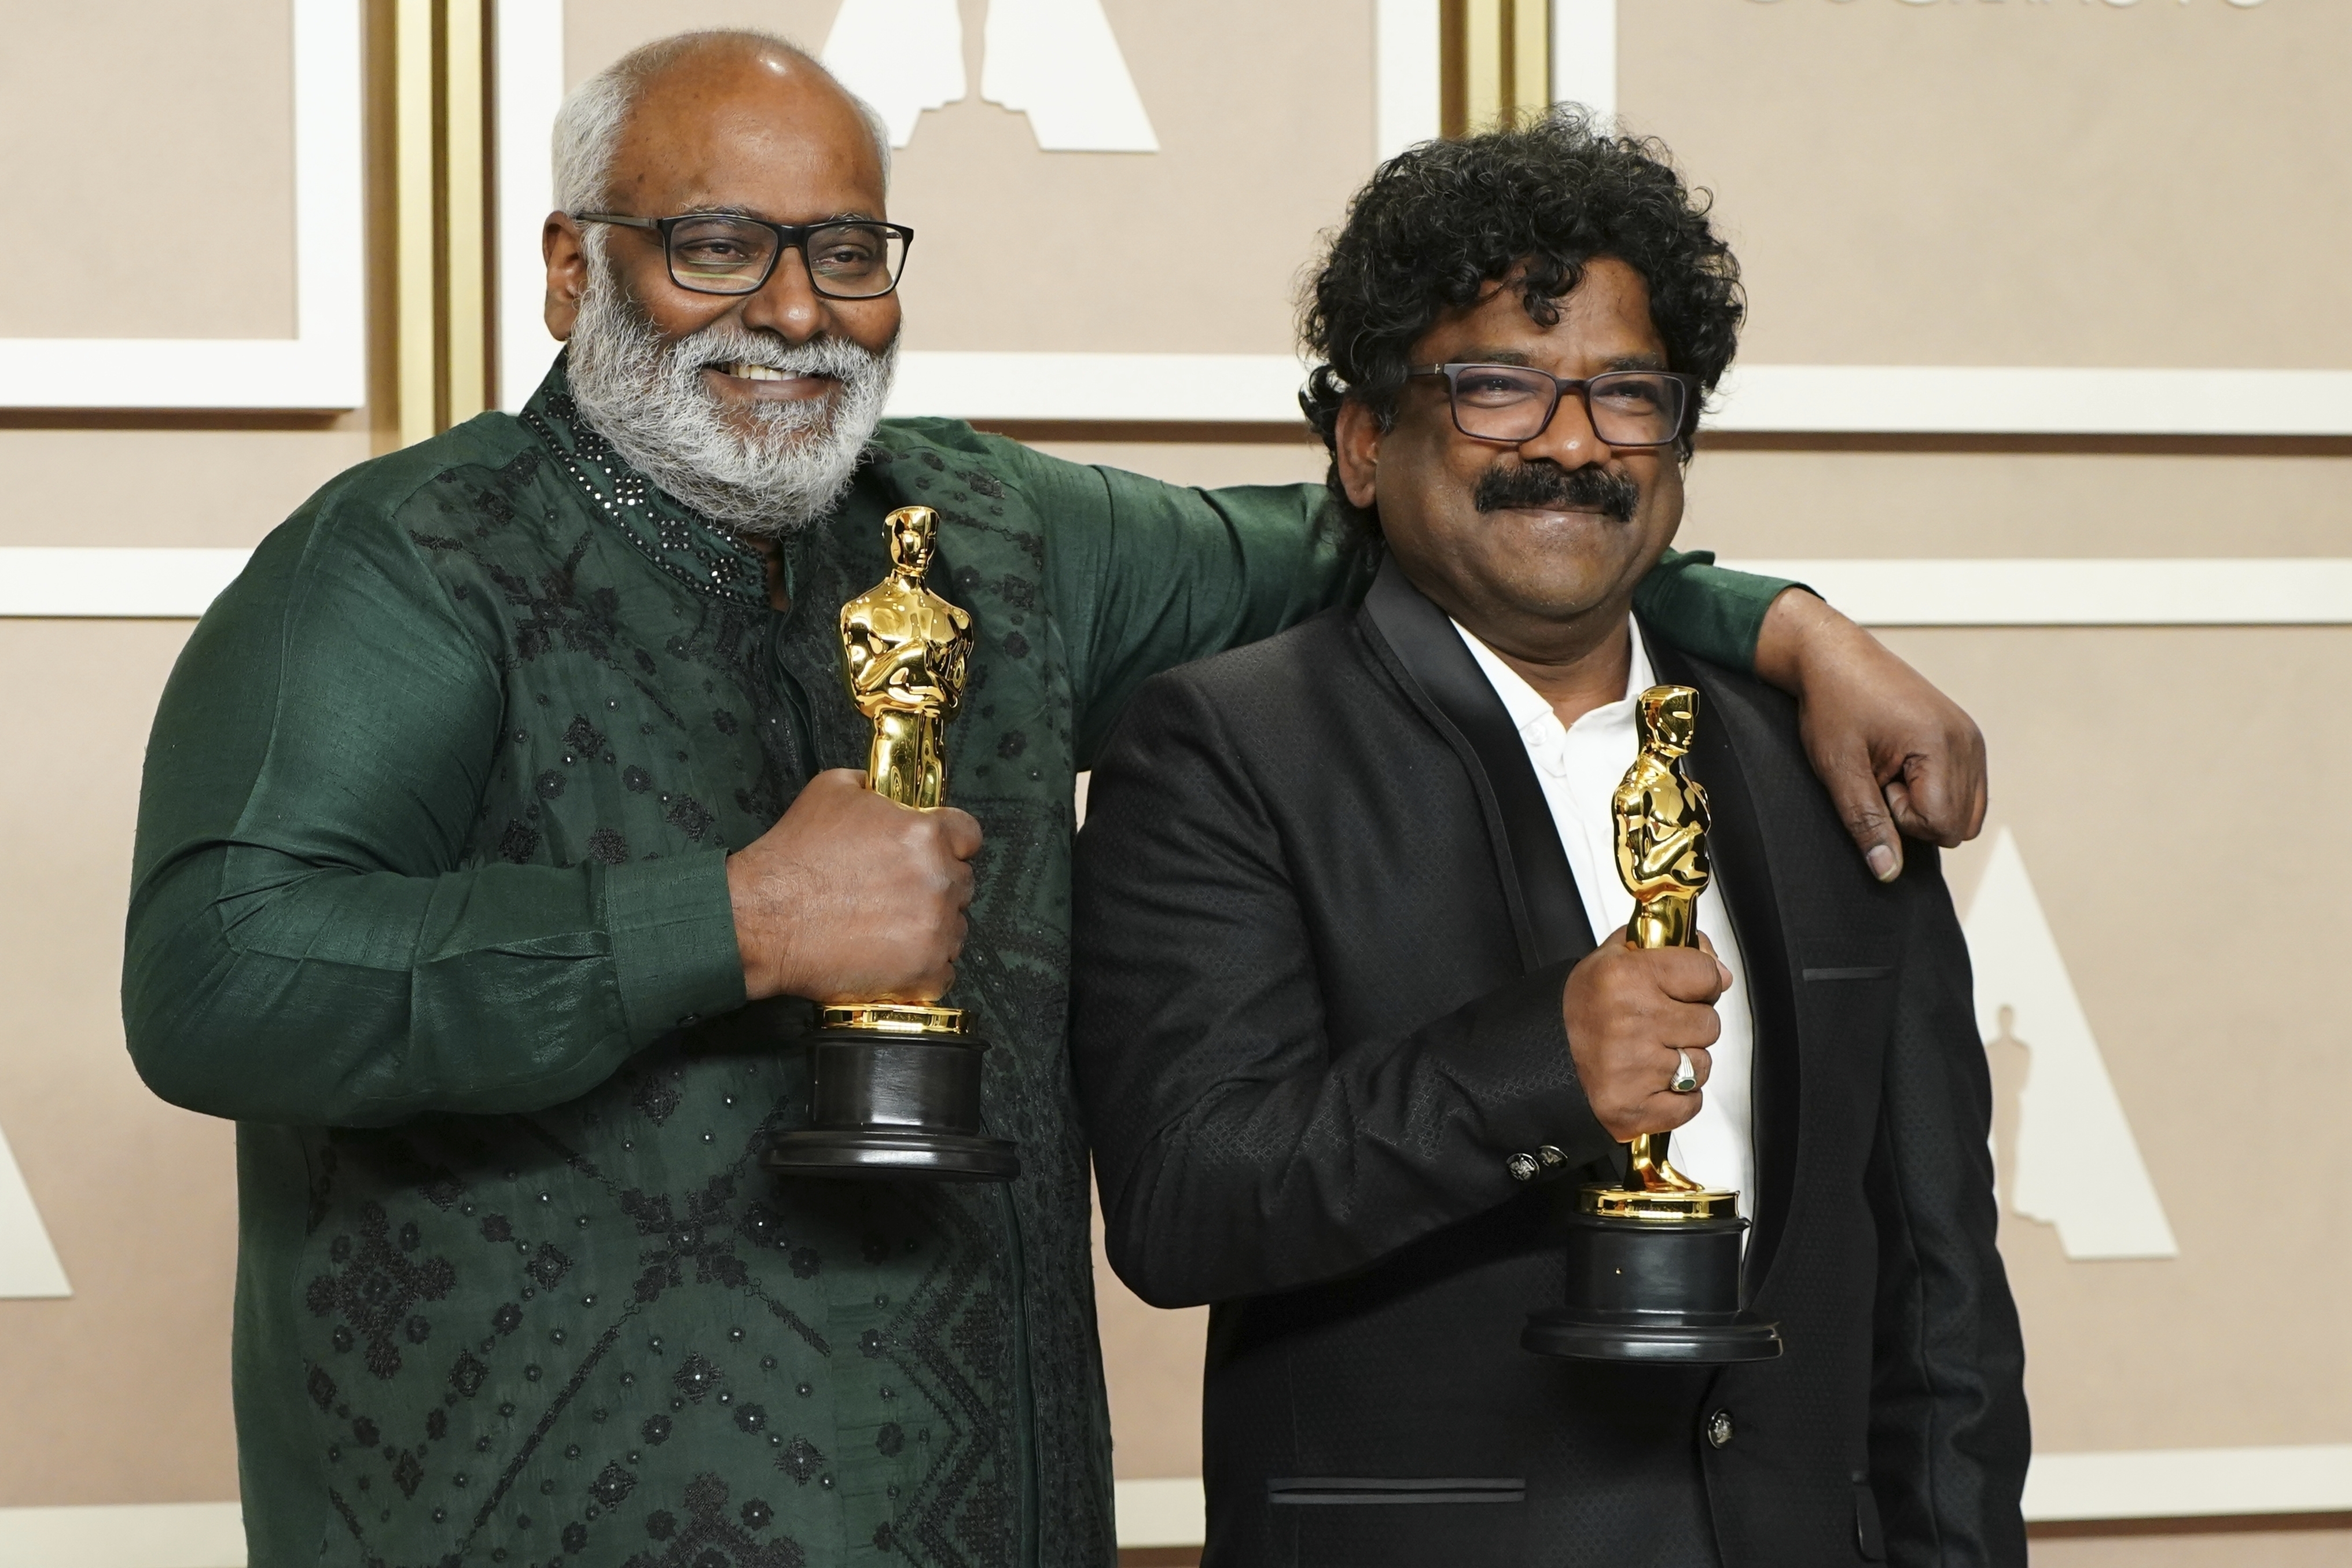 M.M. Keeravaani, izquierda, y Chandrabose, ganadores del premio a mejor canción original por "Naatu Naatu" de "RRR", posan en la sala de prensa en los Oscar el domingo 12 de marzo de 2023 en el Teatro Dolby en Los Angeles. (Foto Jordan Strauss/Invision/AP)